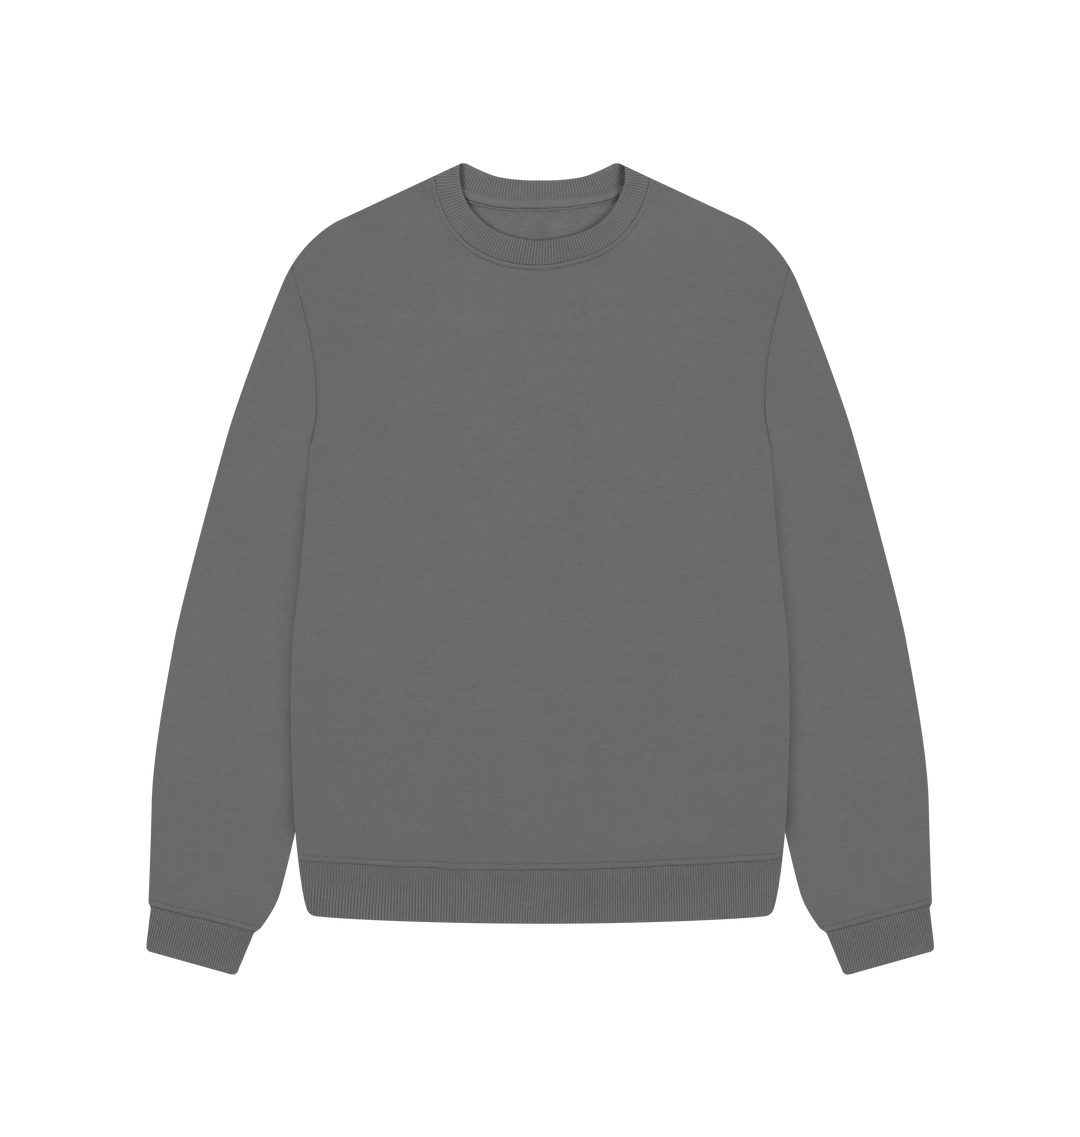 Women's Oversized Sweatshirt - Printed Sweatshirt